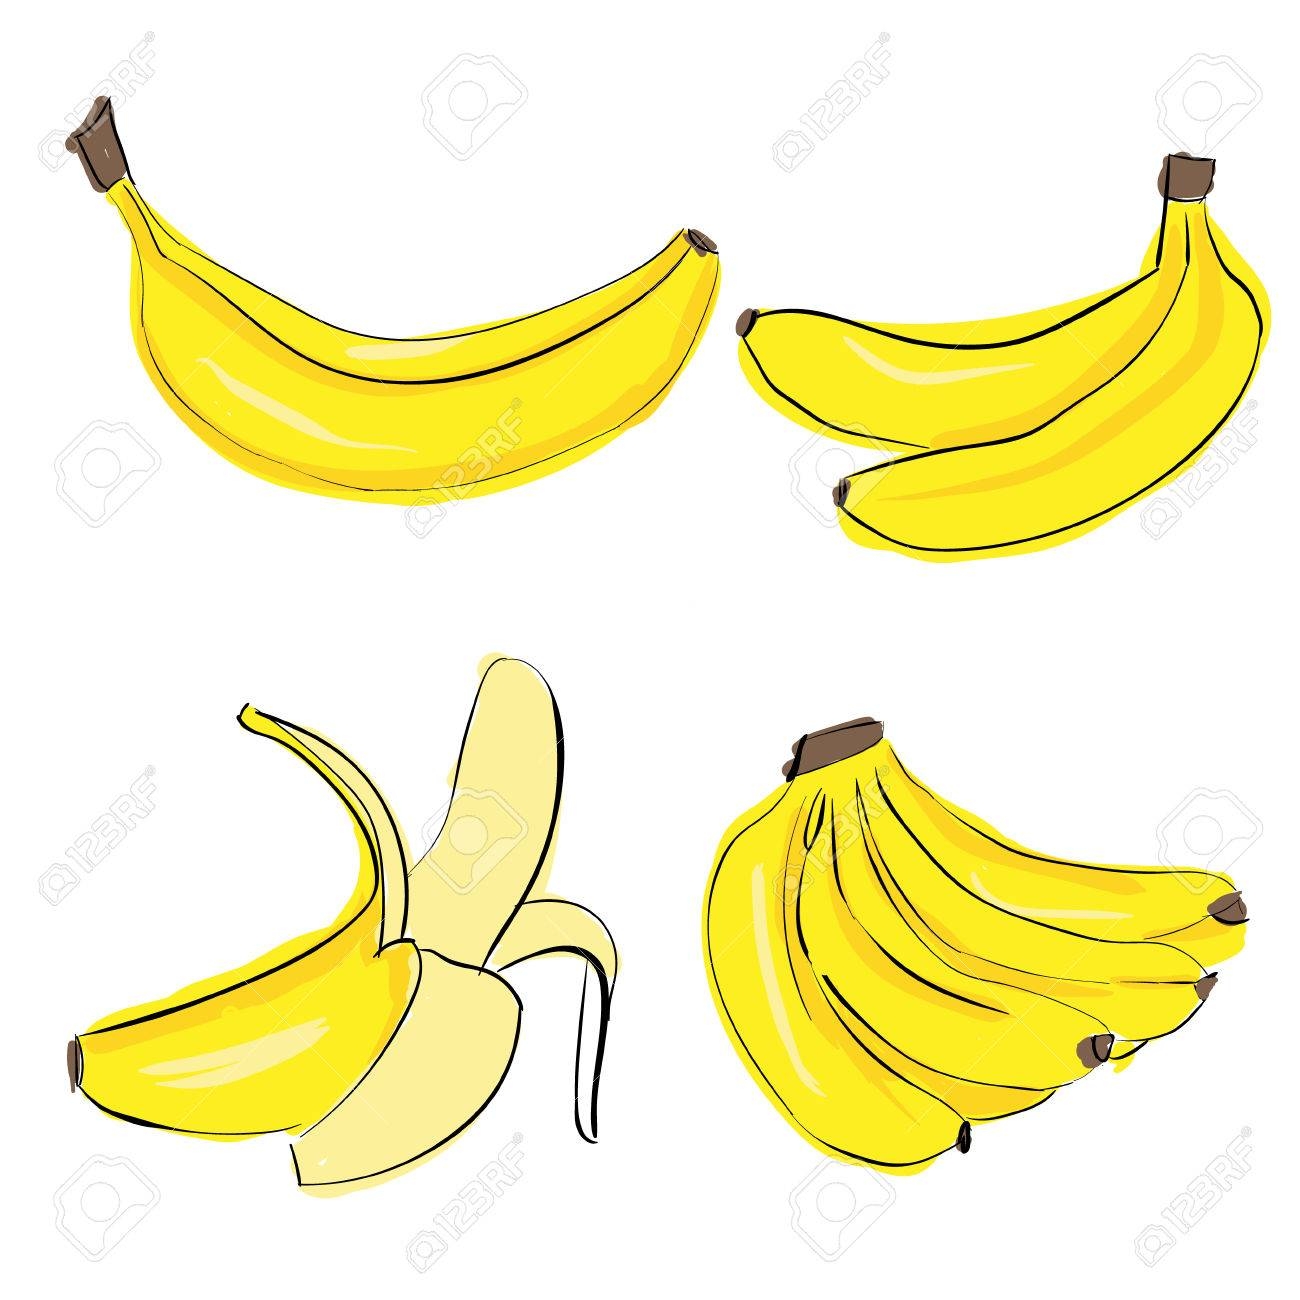 Онлайн пазл «Связка бананов»